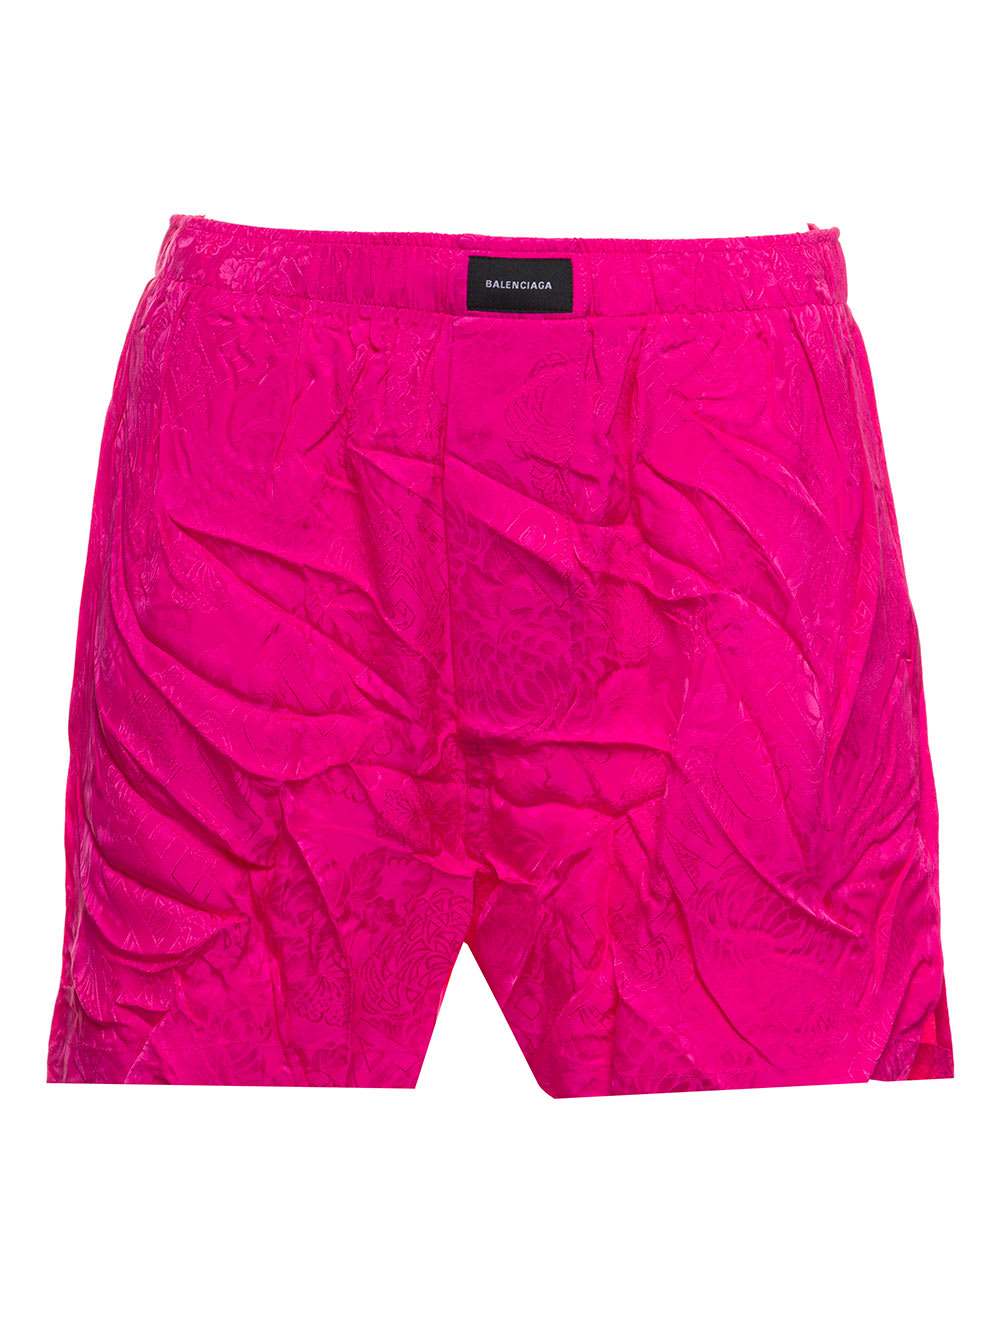 Balenciaga Woman Pink Satin Crinkled Shorts